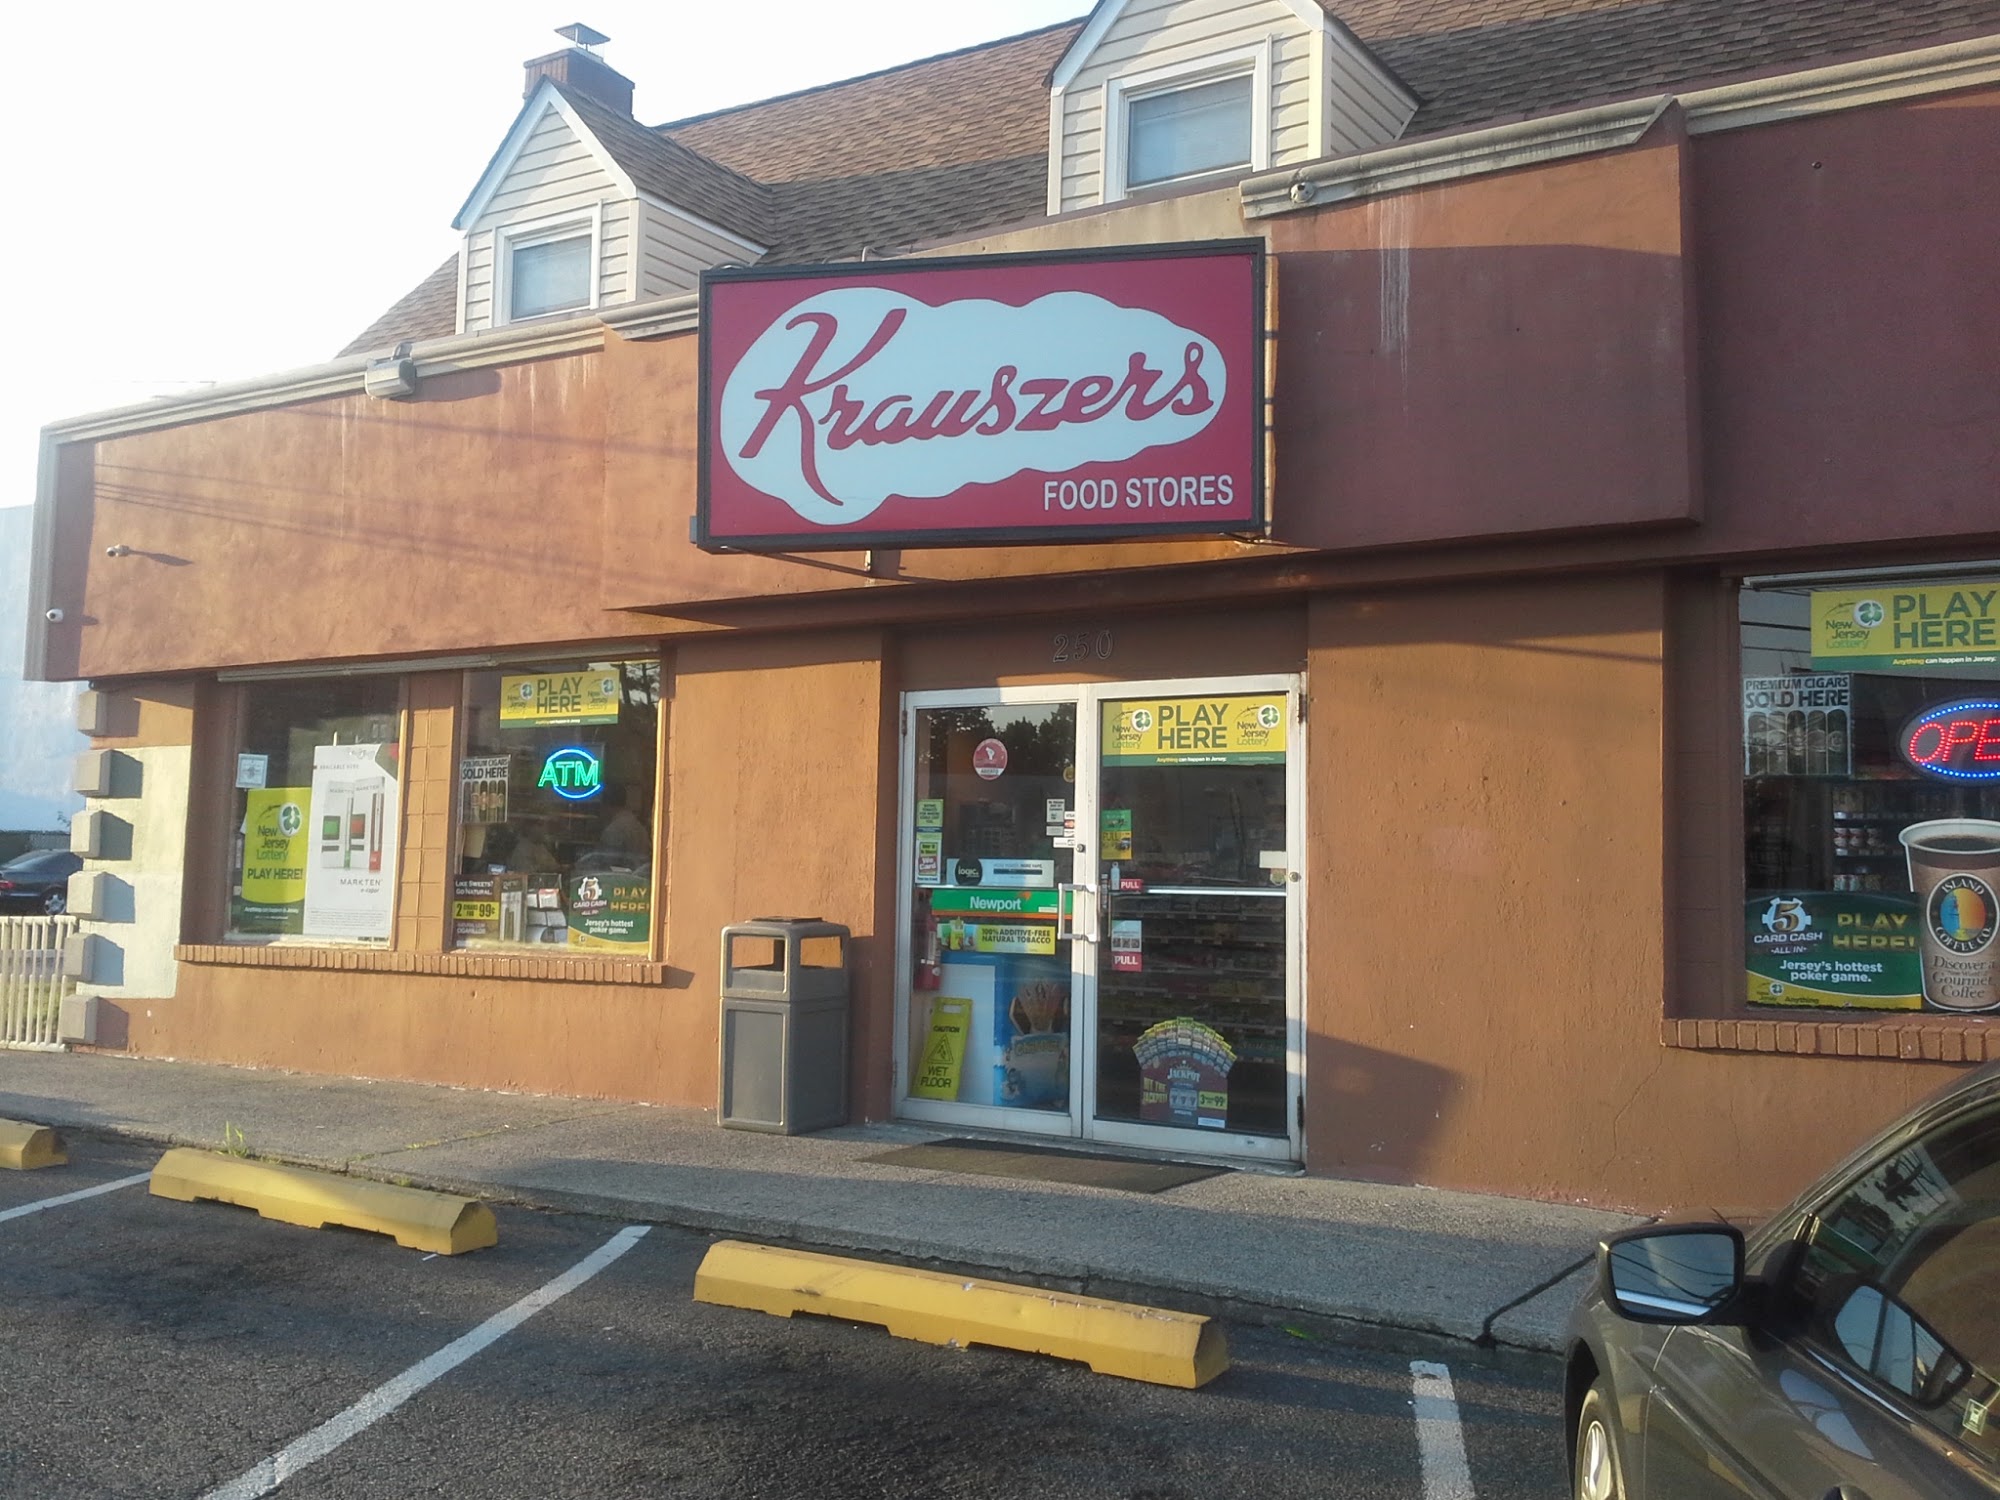 Krauszers Food Stores